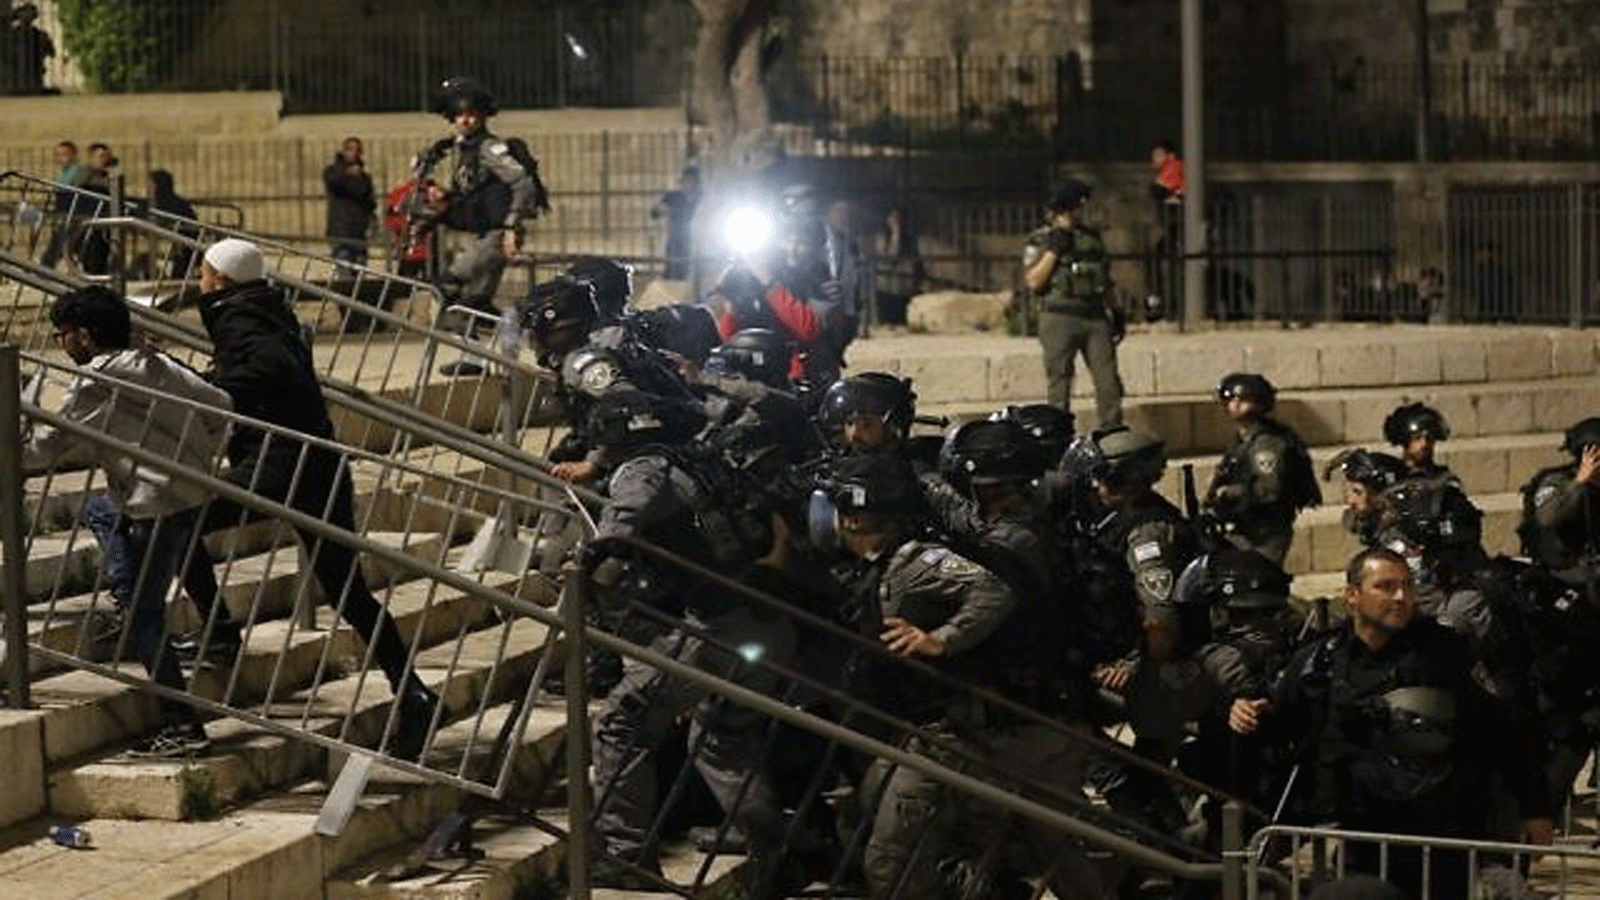  قوات الأمن الإسرائيلية تطرد المتظاهرين الفلسطينيين خارج باب العامود في البلدة القديمة بالقدس(أرشيفية)